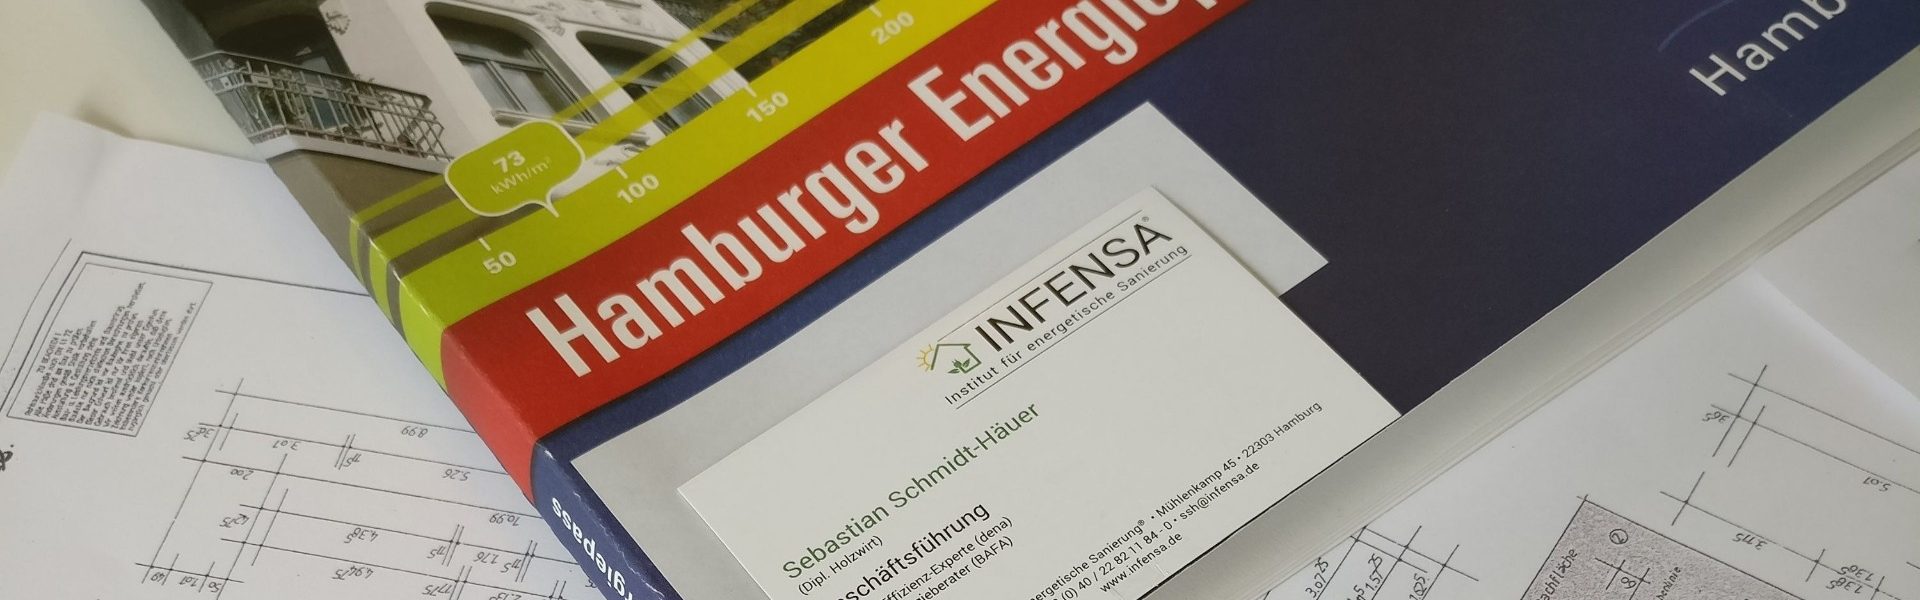 Hamburger_Energiepass_INFENSA (1)